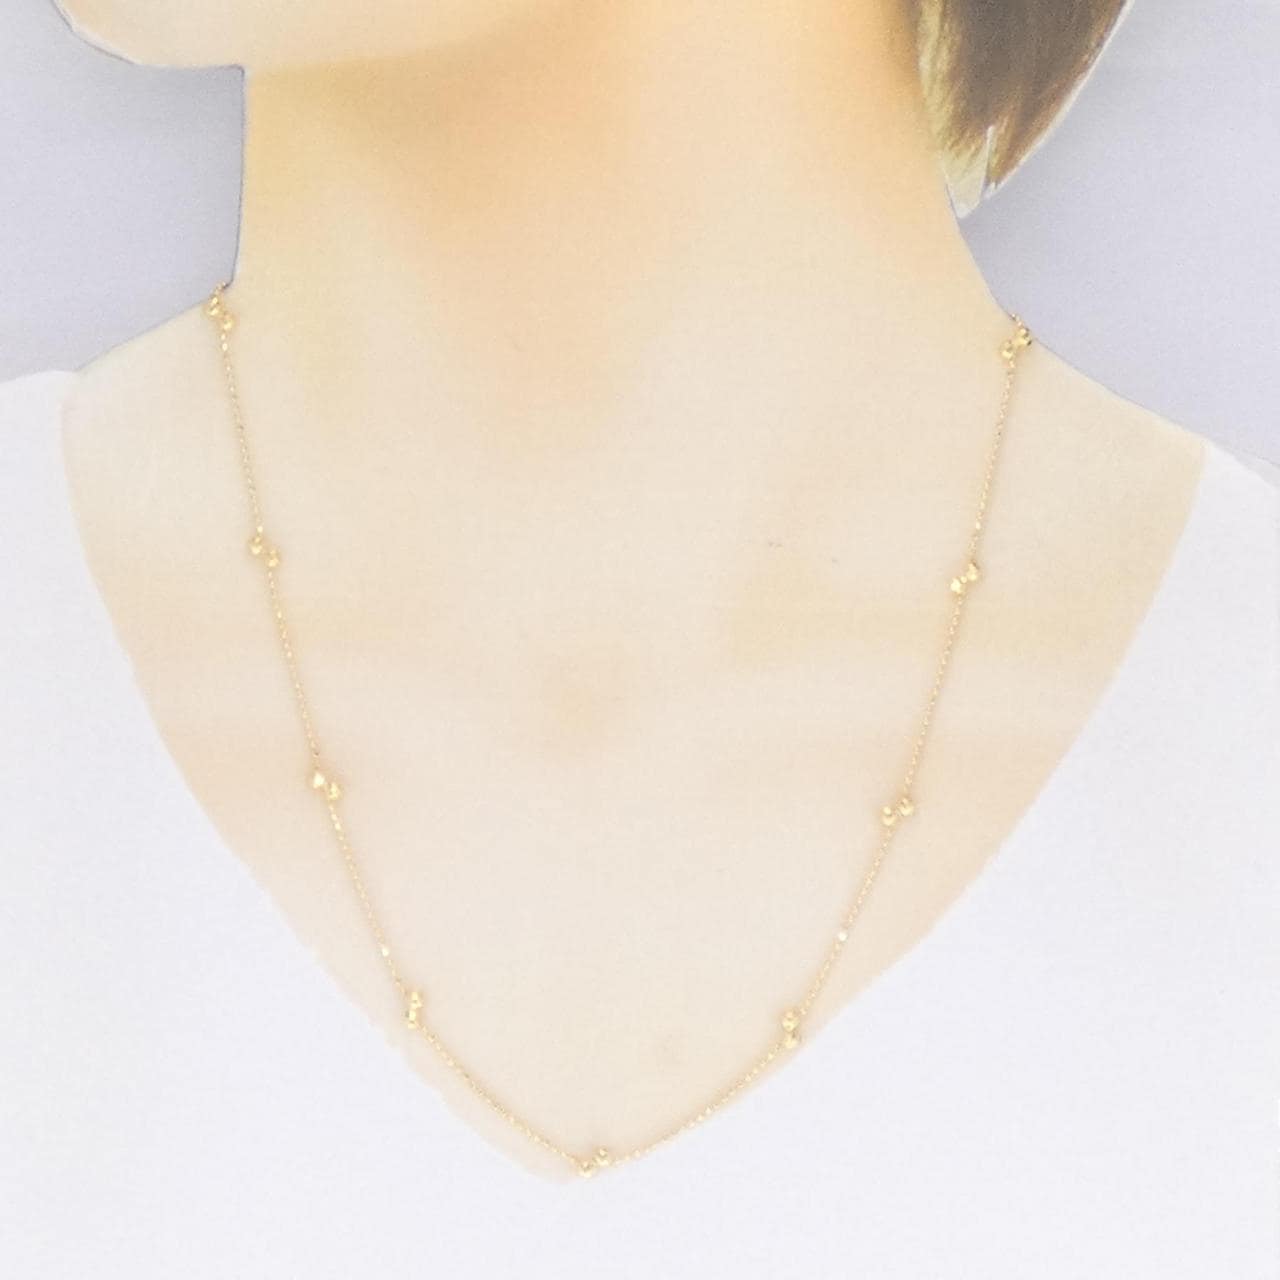 K18YG necklace